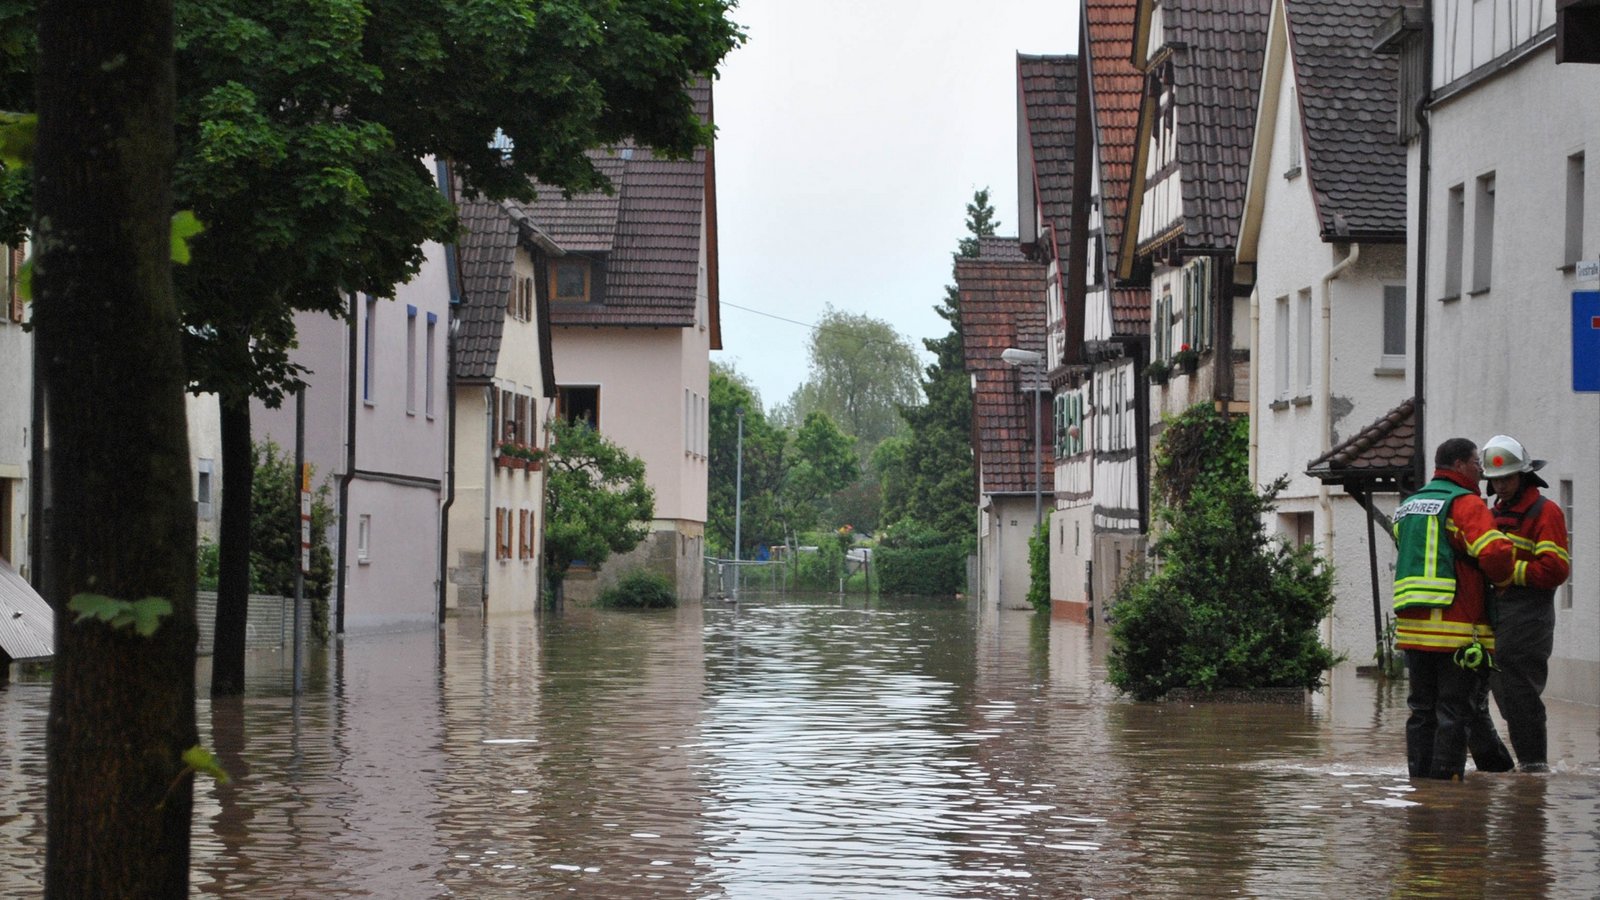 Damit sich solche Bilder vom Juni 2013 in Illingen nicht wiederholen, sind im aktuellen Haushalt 200 000 Euro für Hochwasser- und Katastrophenschutz eingestellt.  Foto: Stahlfeld